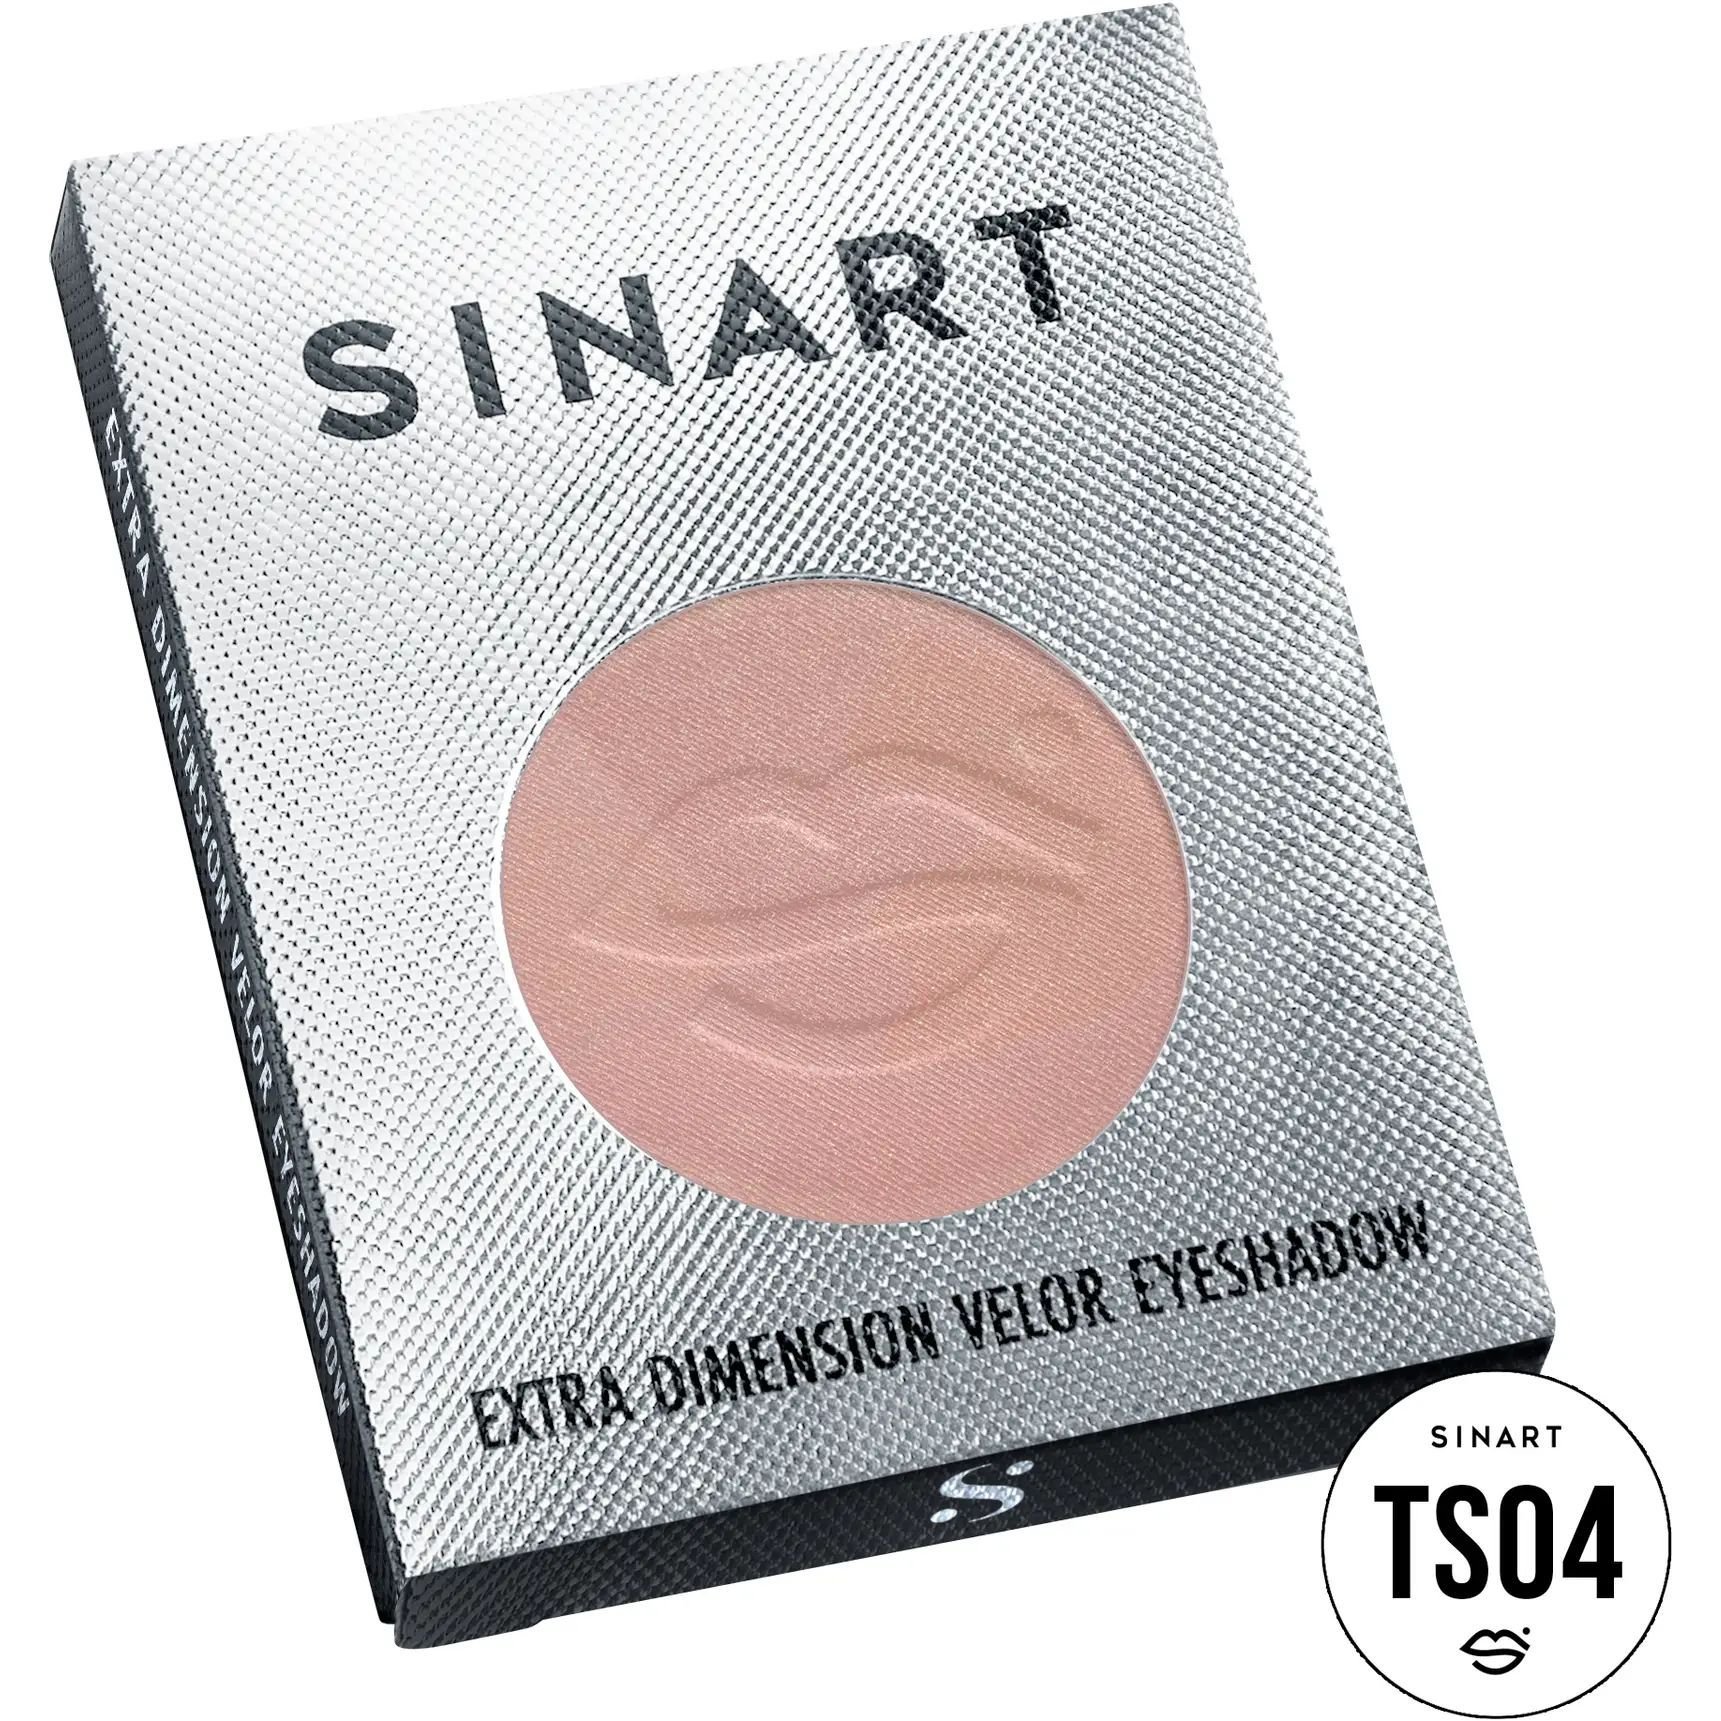 Прессованные тени для век Sinart TS04 Extra Dimension Velor Eyeshadow - фото 3